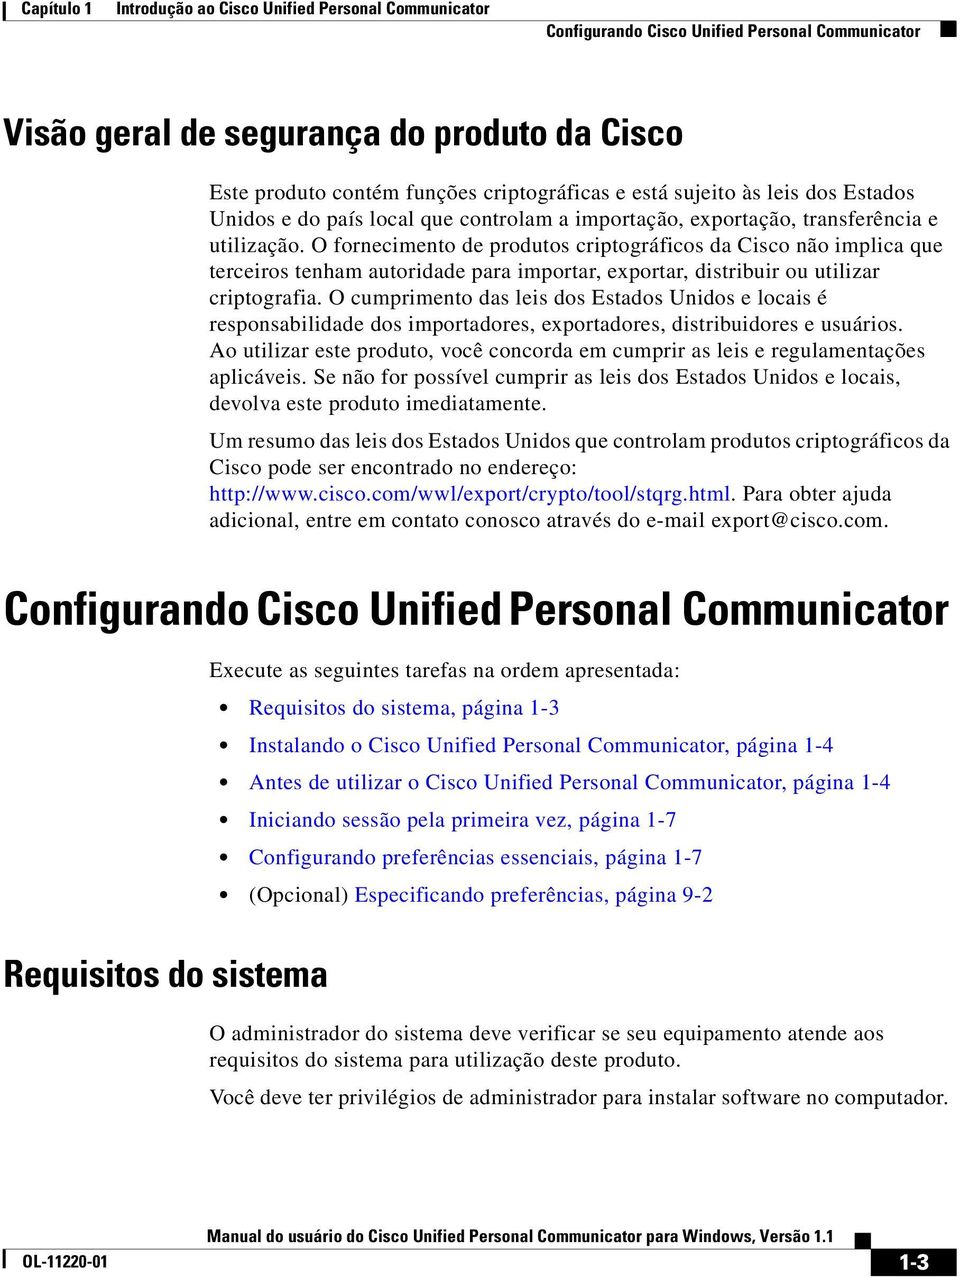 O fornecimento de produtos criptográficos da Cisco não implica que terceiros tenham autoridade para importar, exportar, distribuir ou utilizar criptografia.